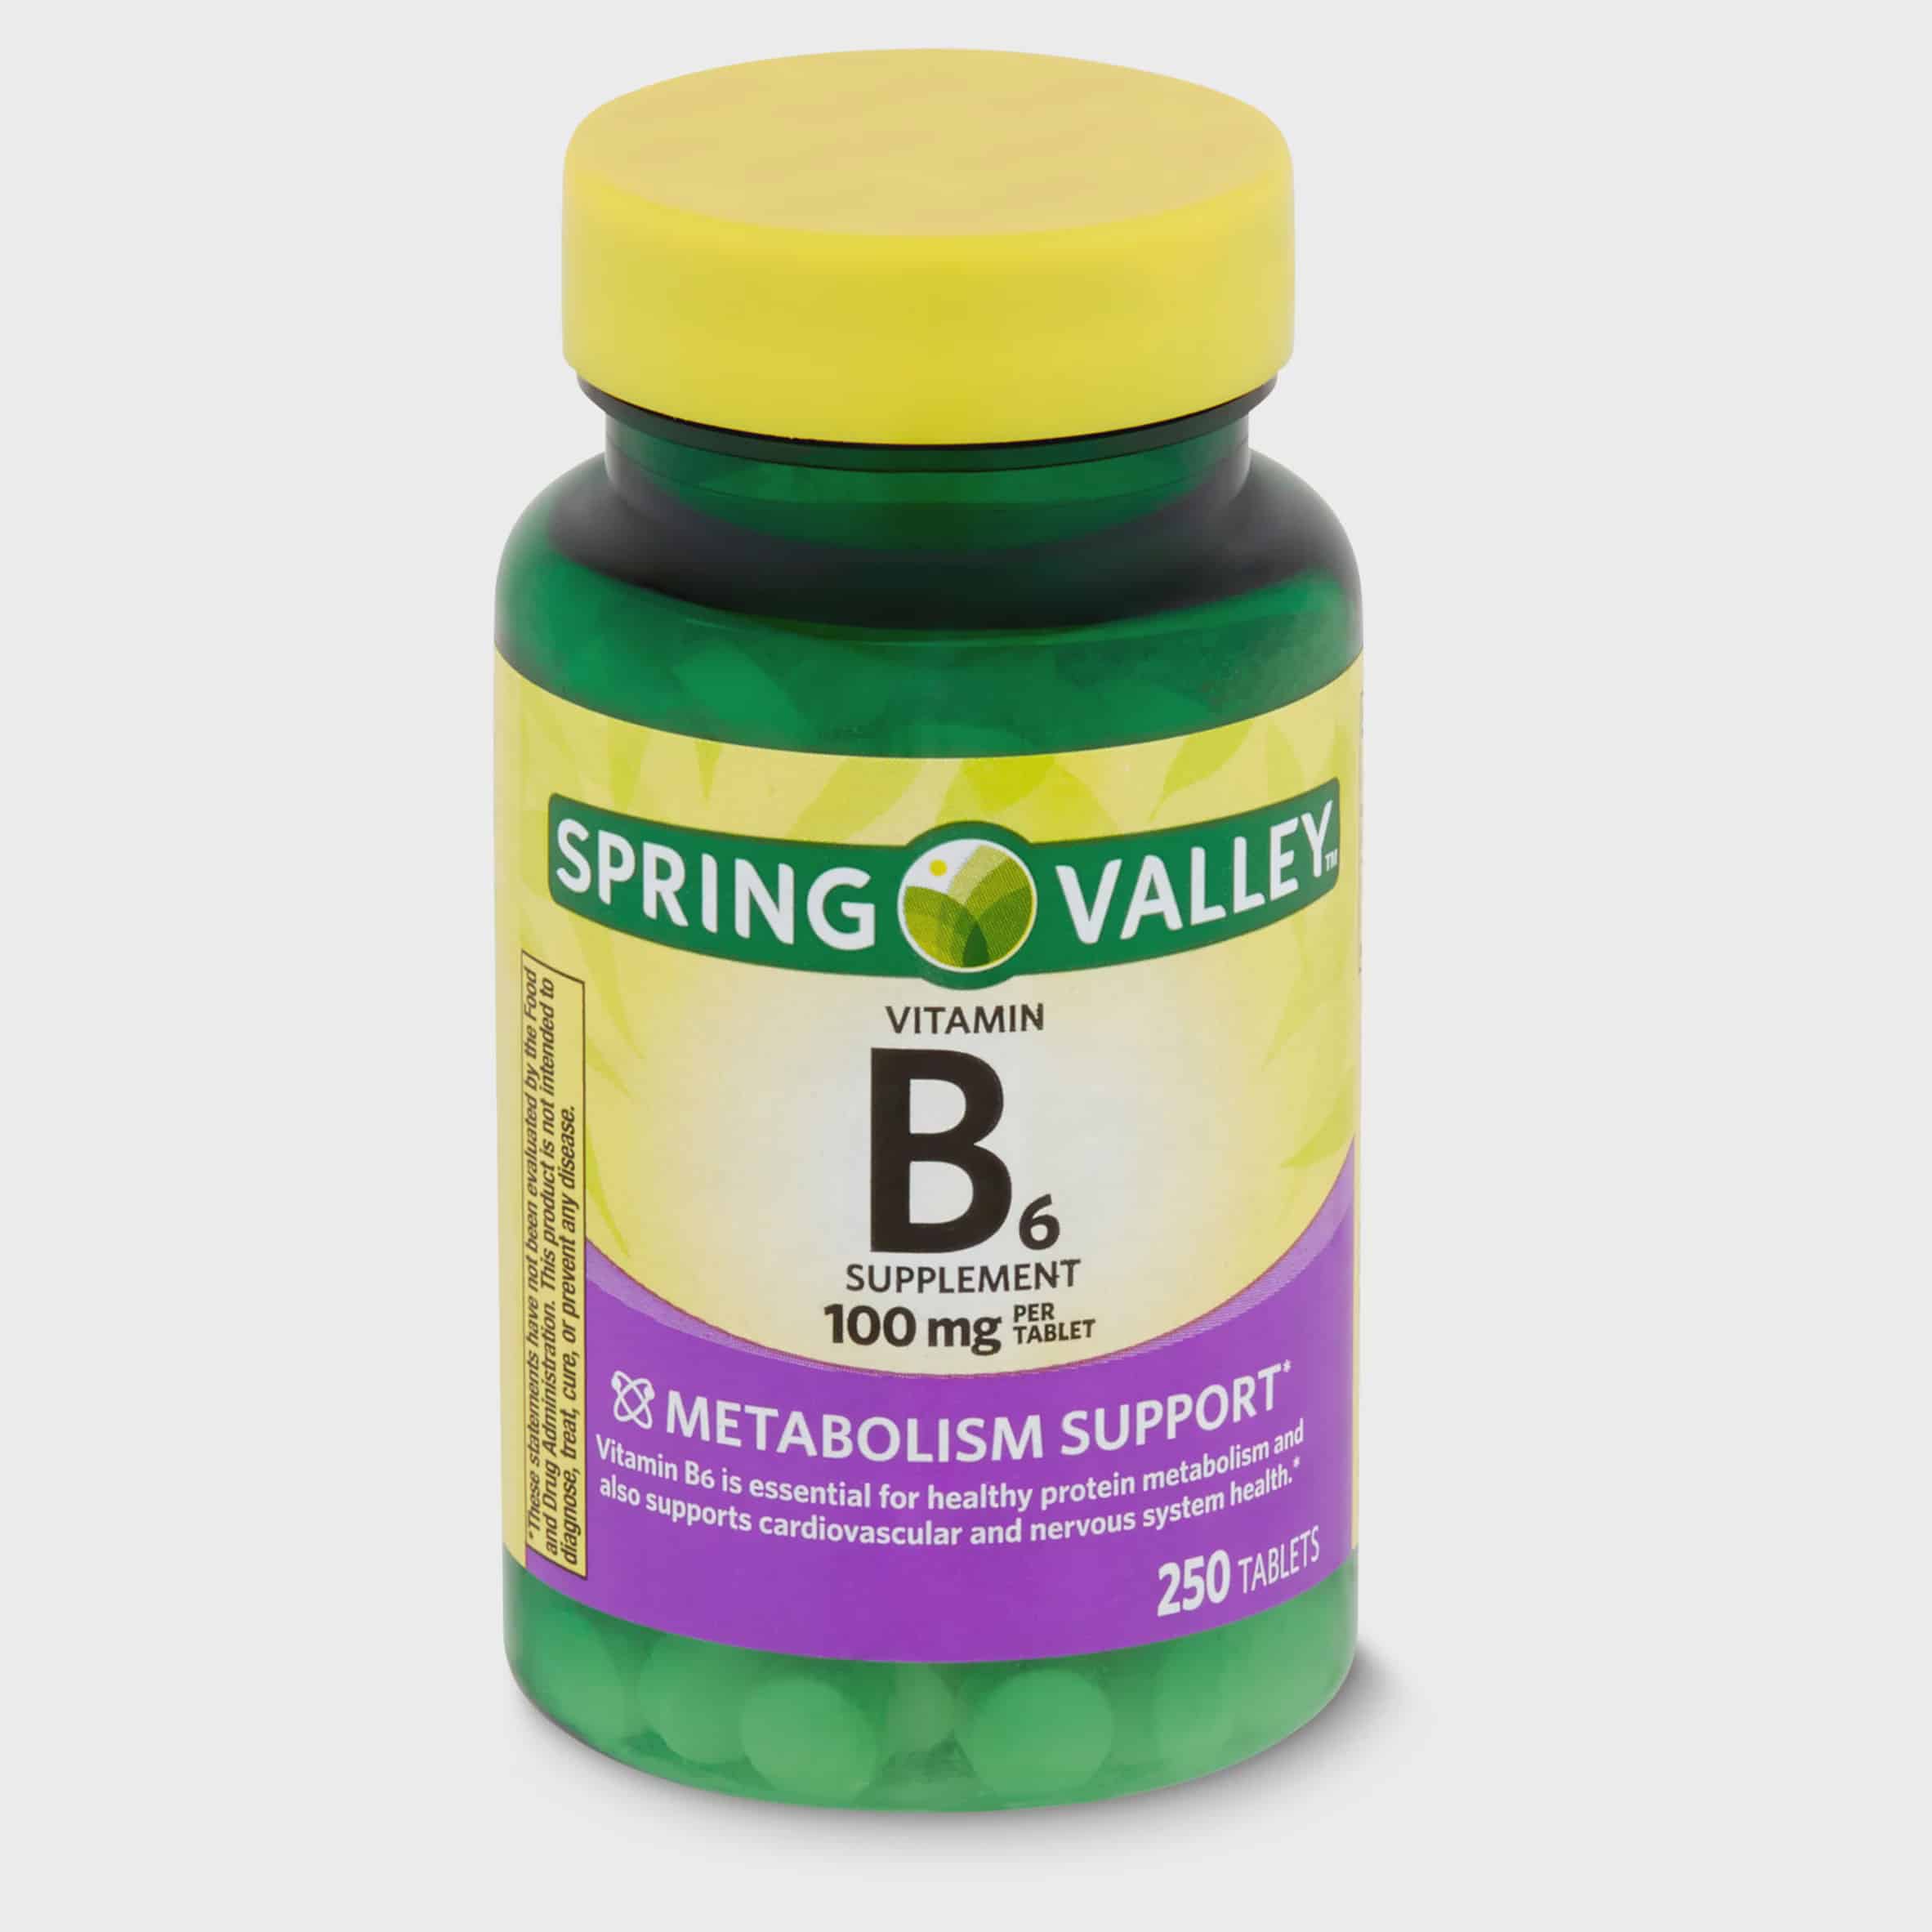 补充维生素B6可以减少焦虑和抑郁 第1张